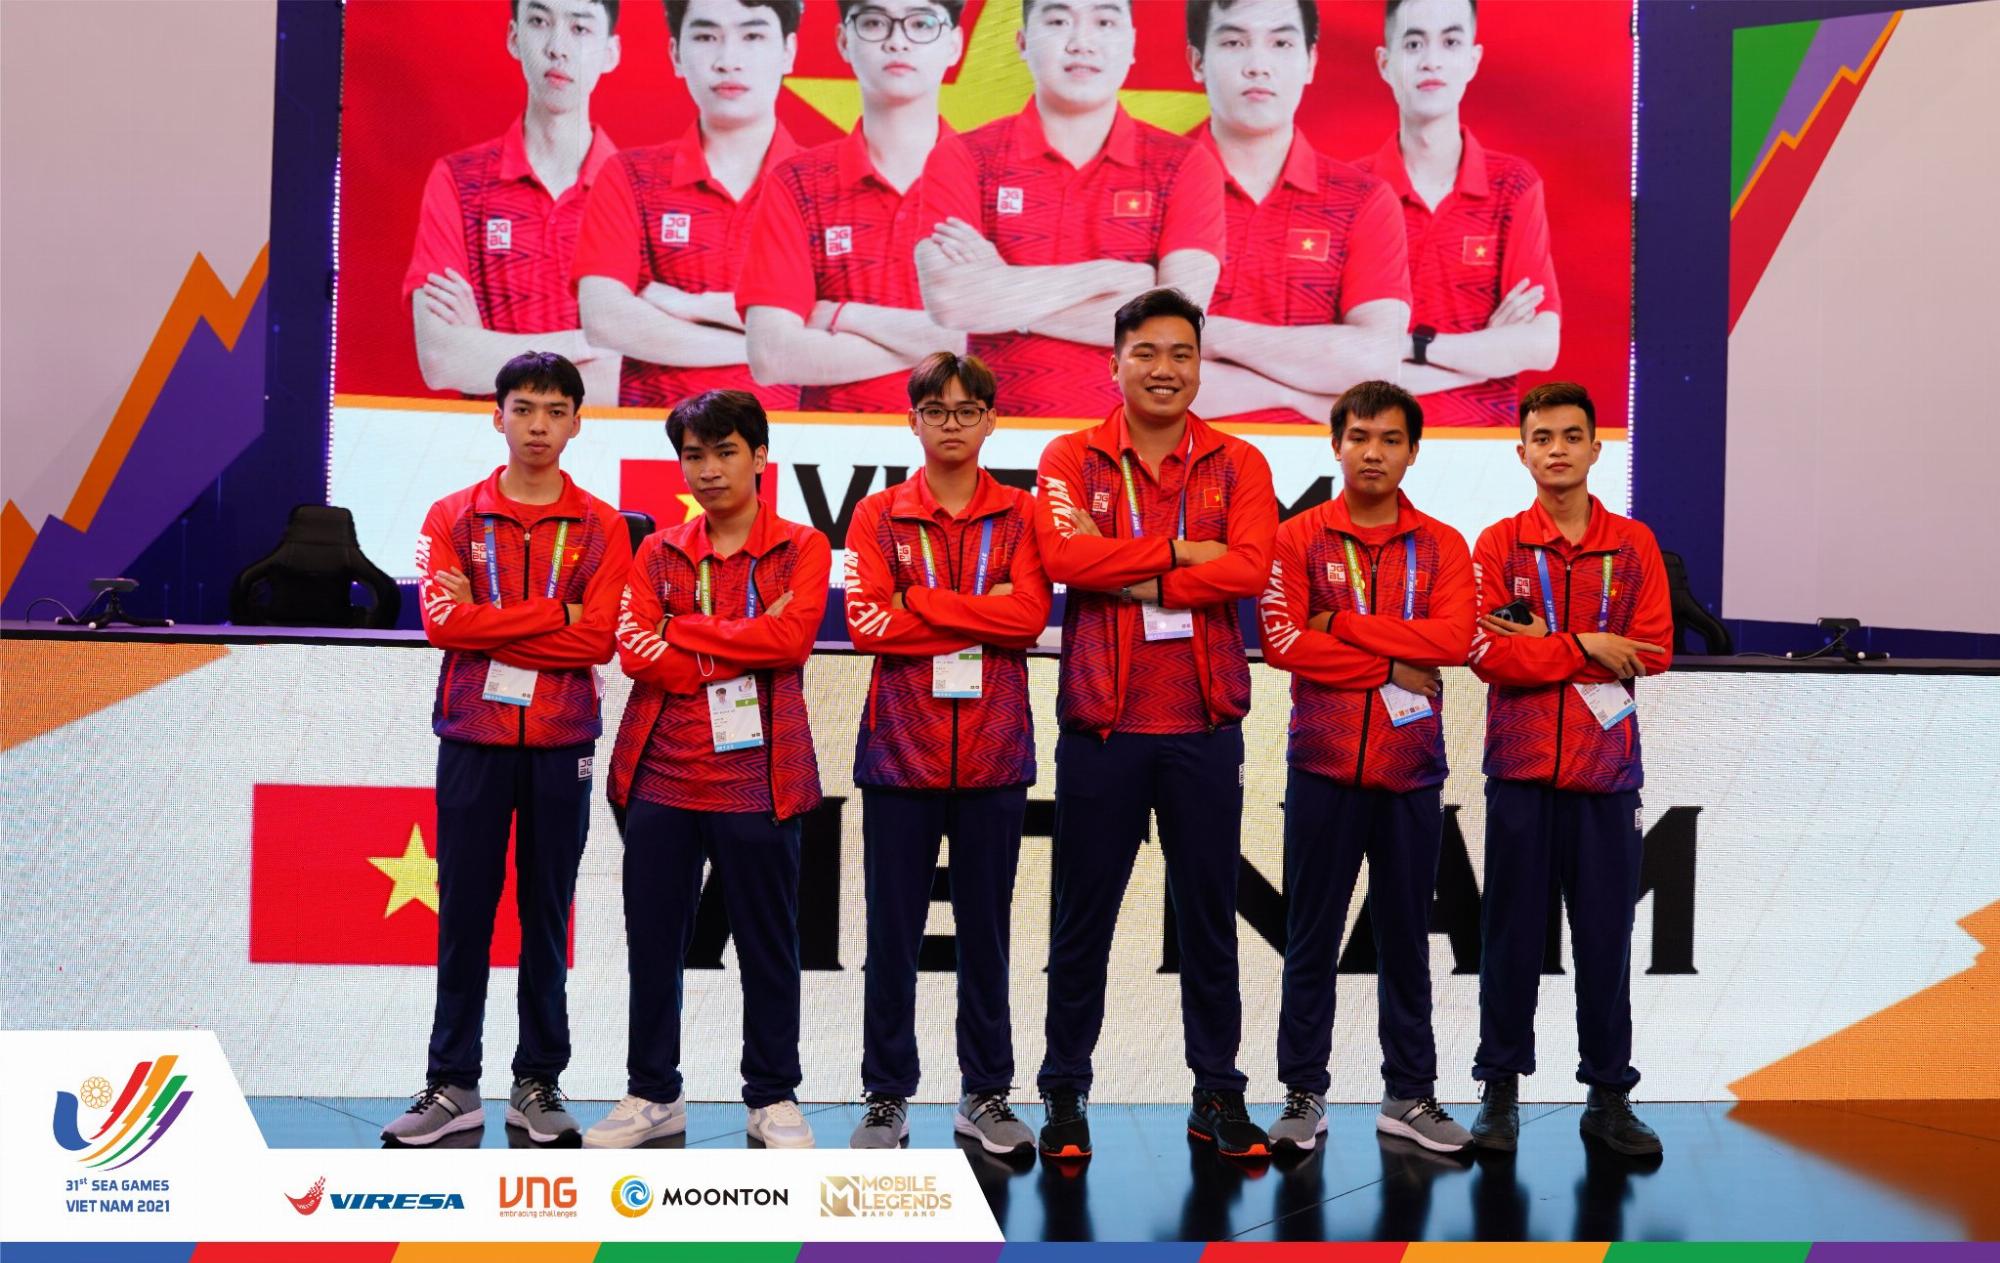 [Trực tiếp] SEA Games 31 – Mobile Legends: Bang Bang ngày 19/5: Singapore đánh bại Malaysia 2-1 để giành Huy Chương Đồng